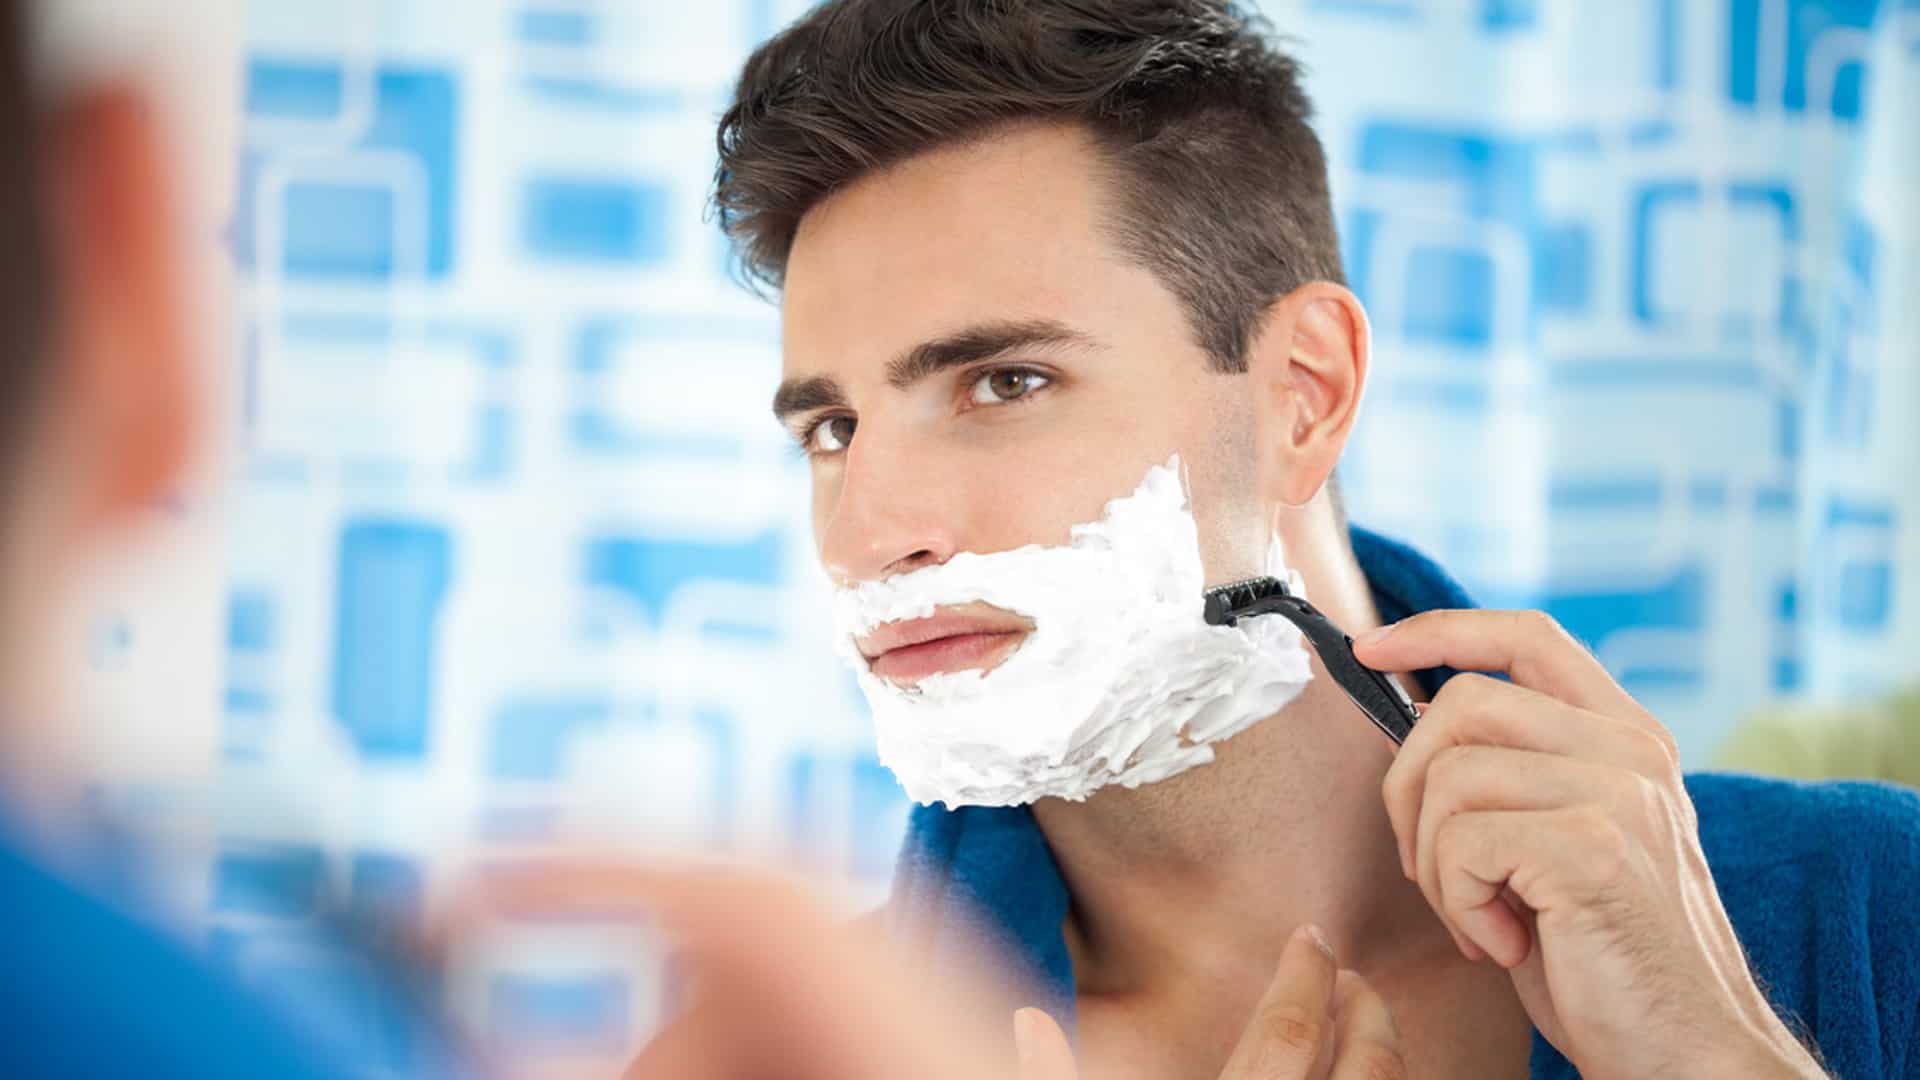 shaving and skin care for men